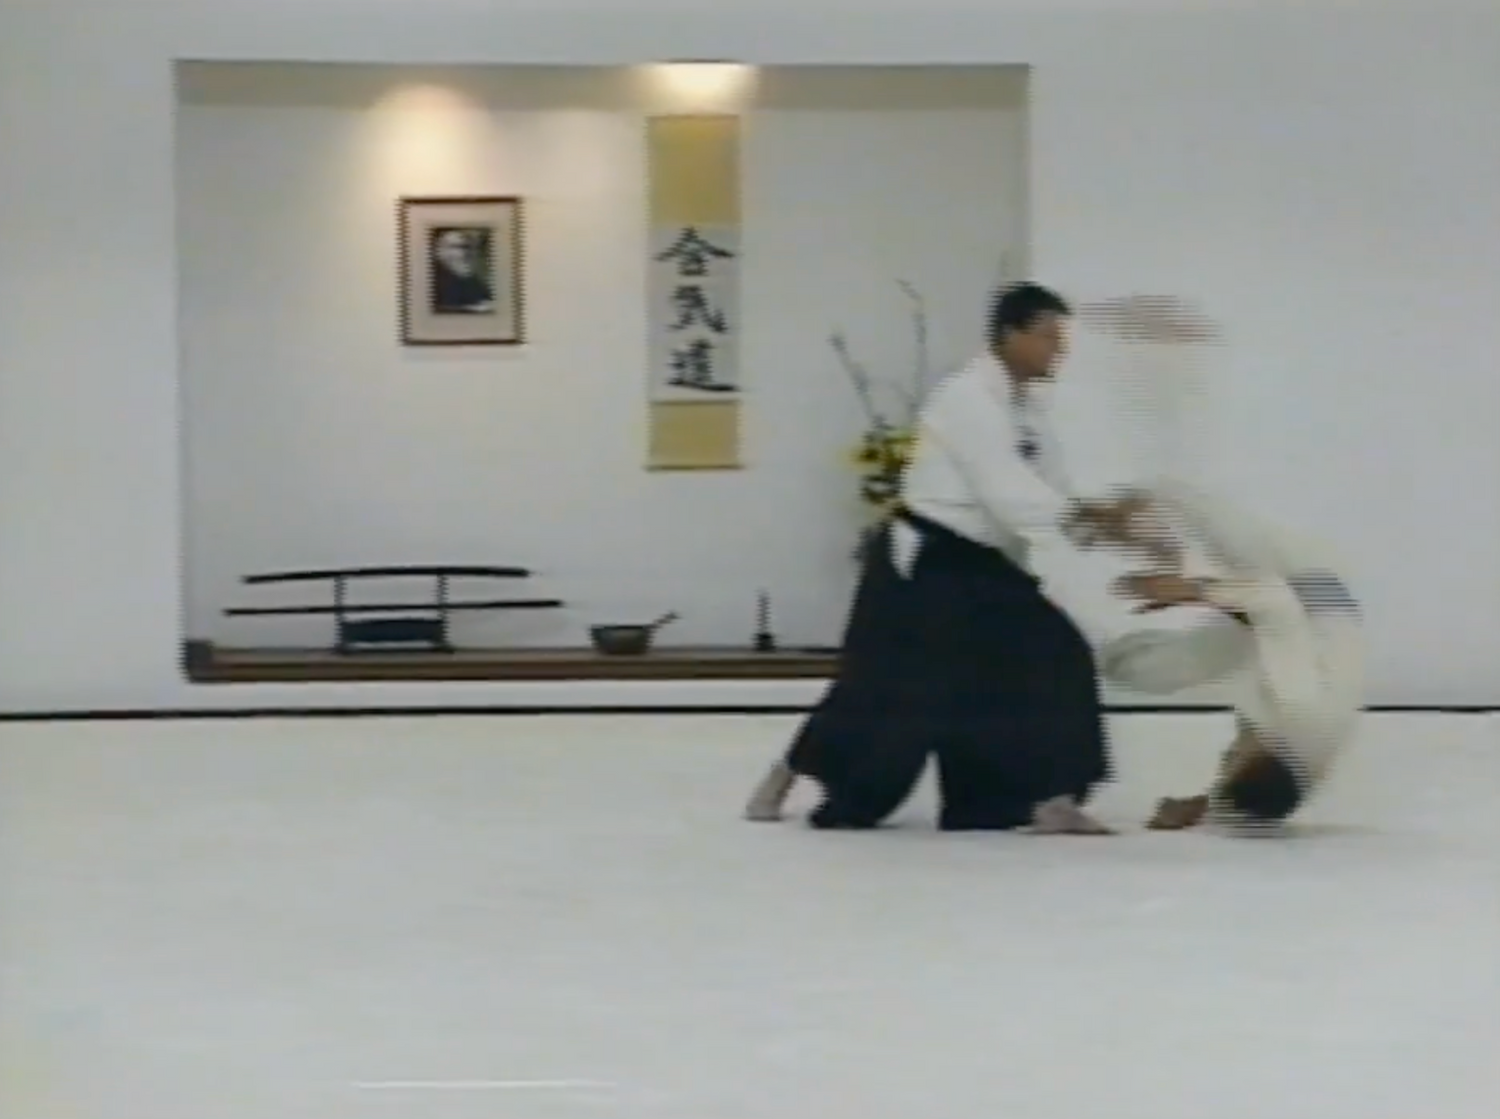 Colección completa de Aikido Expo 4 en DVD de la revista Aikido Today